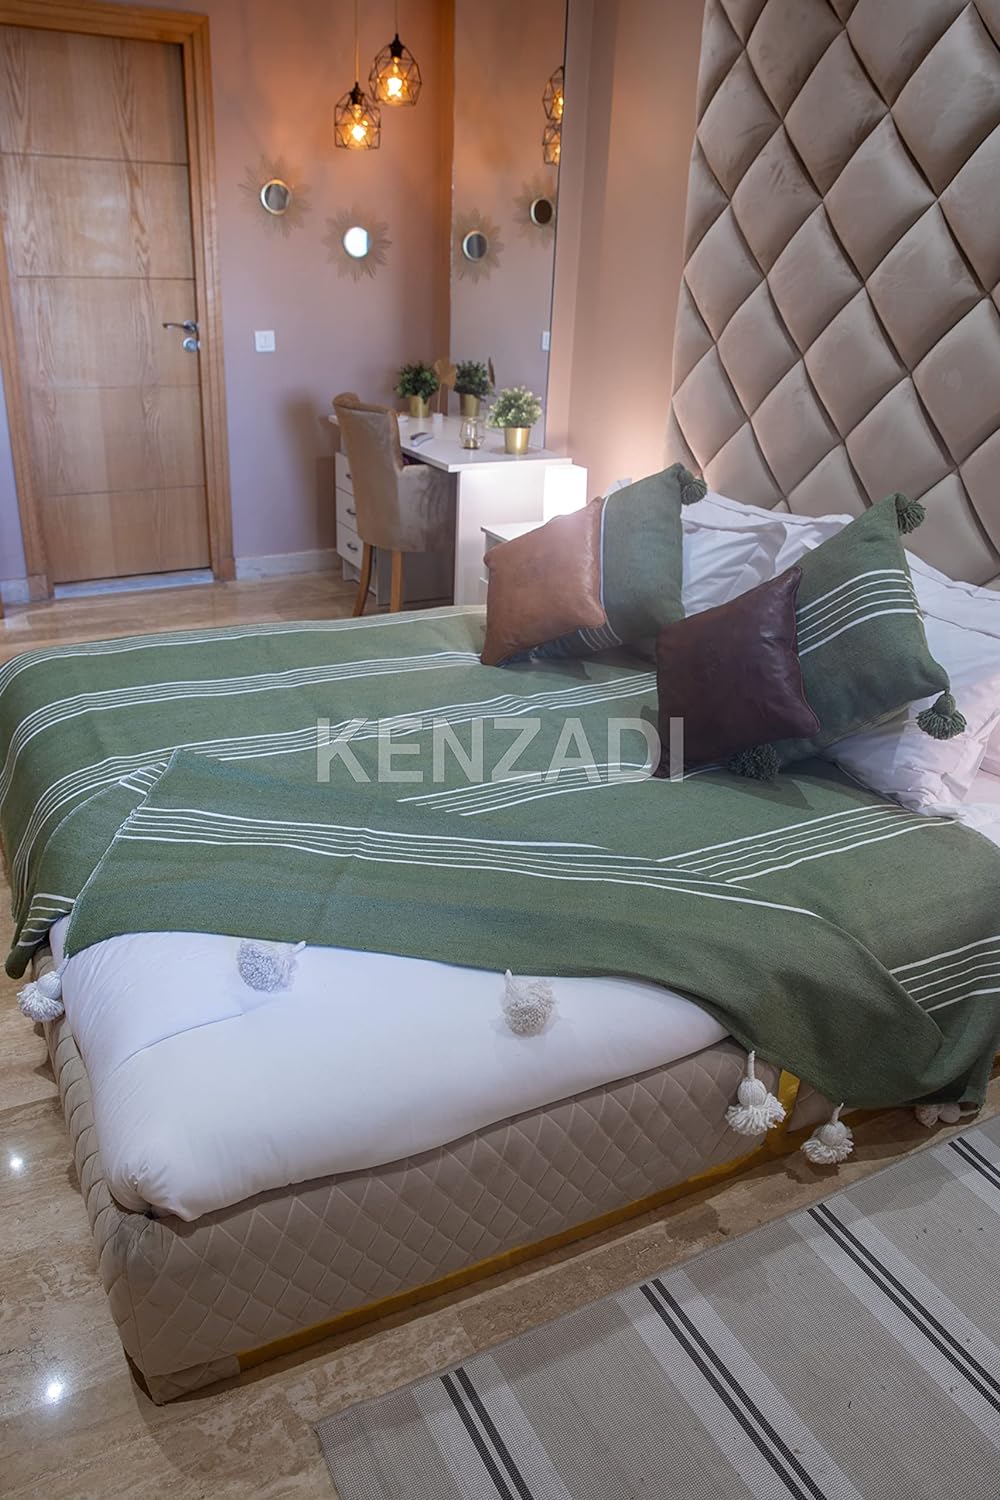 KENZADI Moroccan Handmade Pompom Blanket, Throw Blanket, Pom Pom Blanket, Boho Blanket, Bed Cover, Warm Blanket, Cozy Blanket (Striped Green with pom White, King (U.S. Standard)) - Handmade by My Poufs